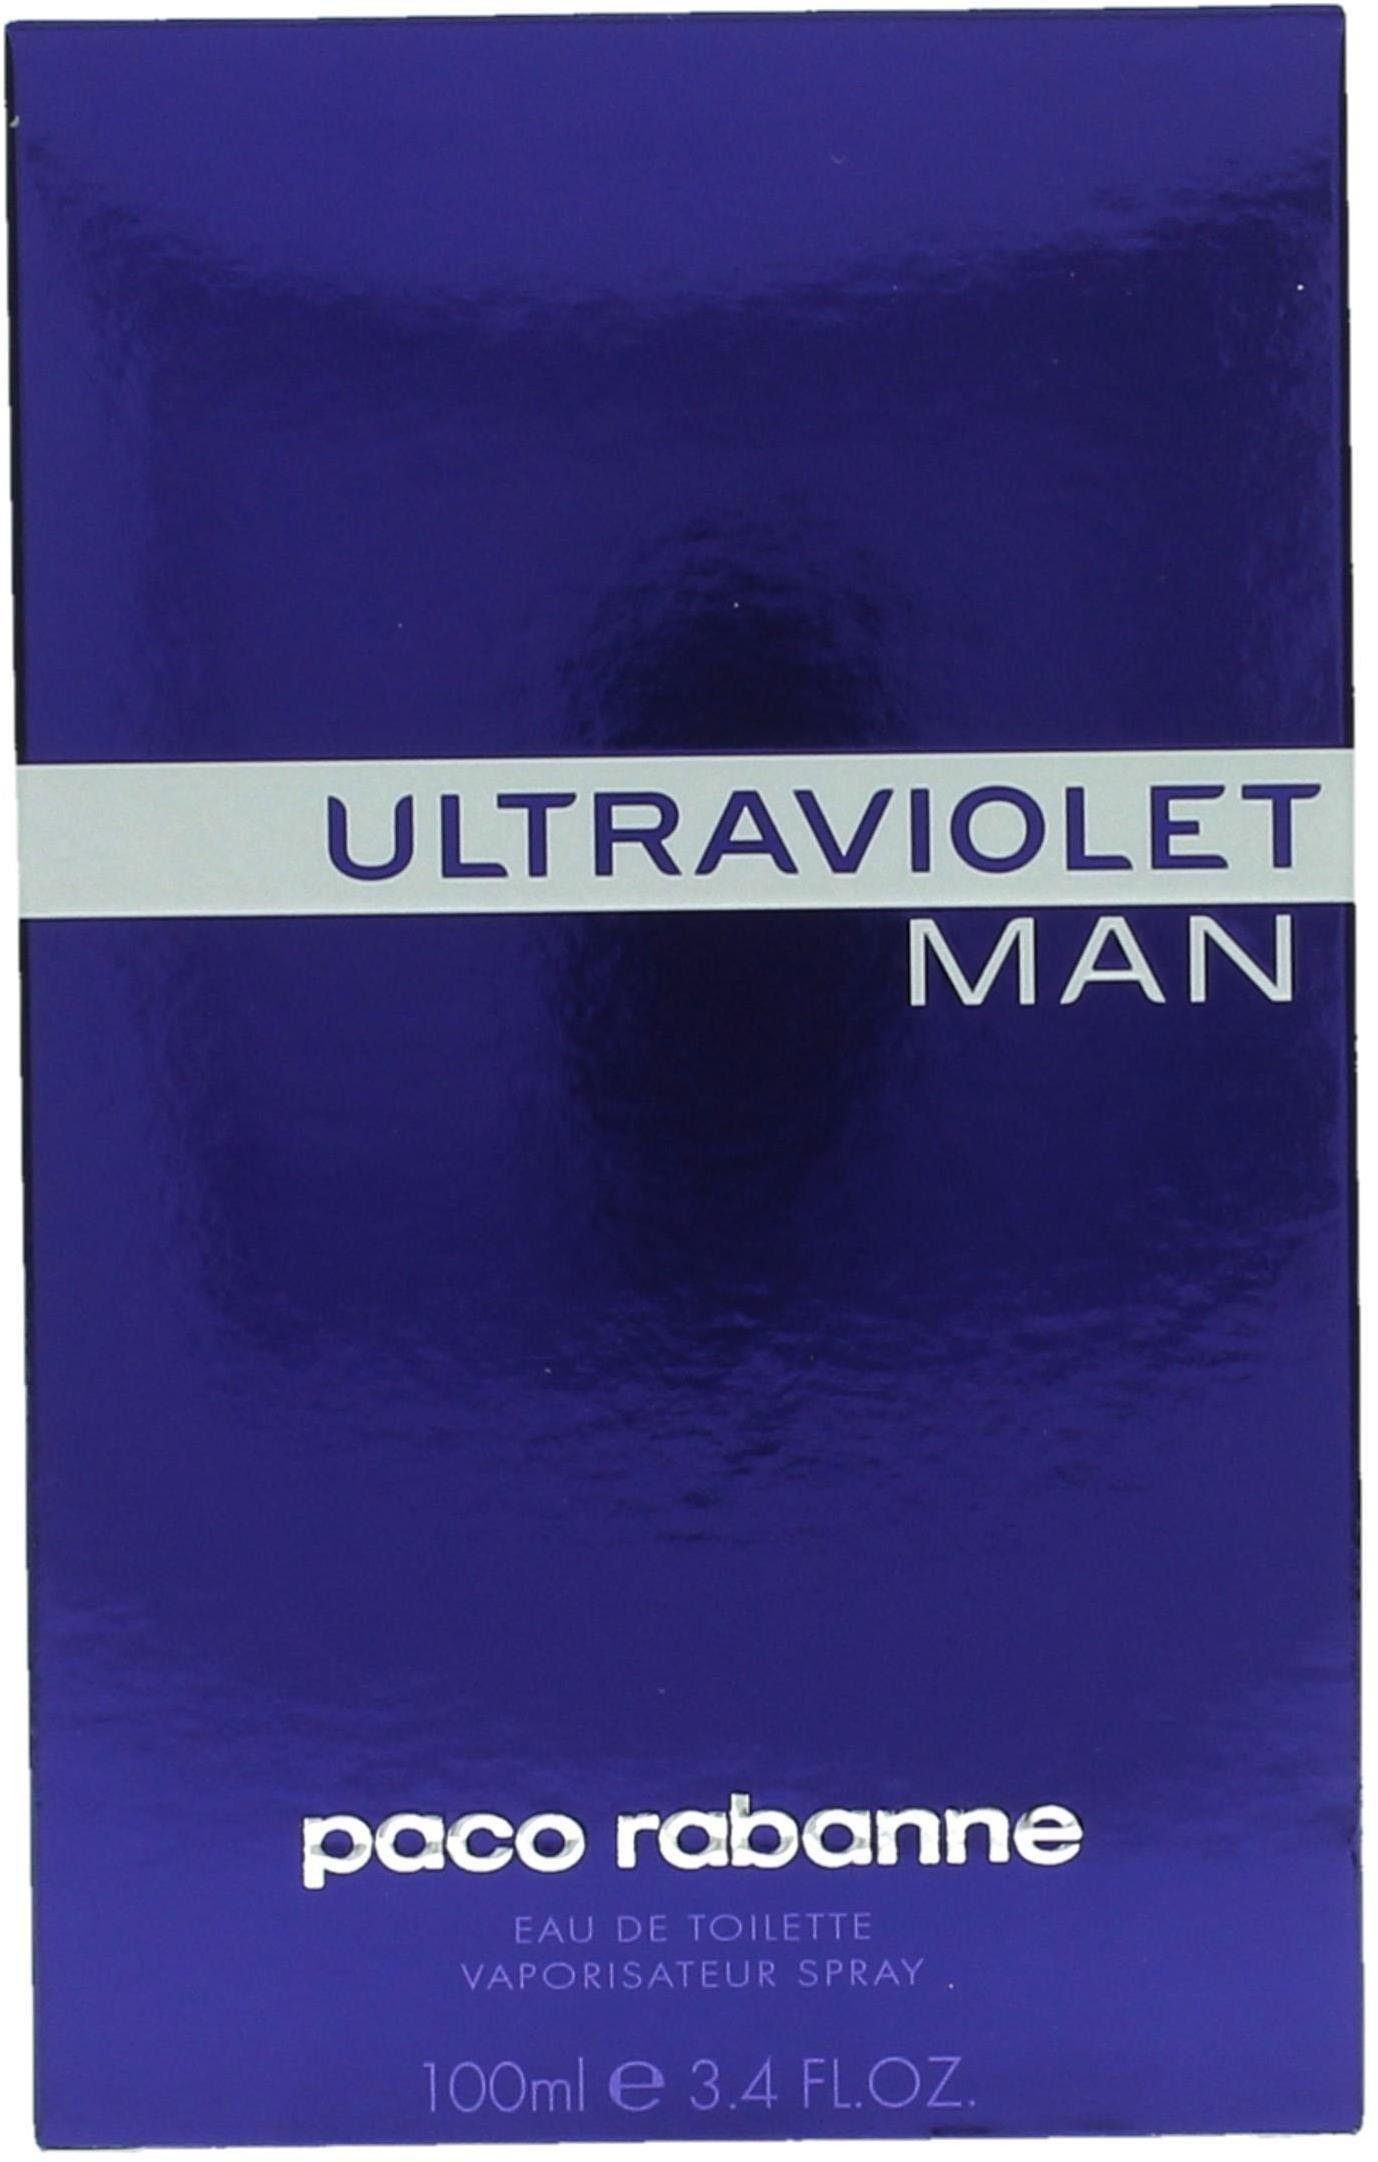 rabanne Eau Man paco Ultraviolet Toilette de